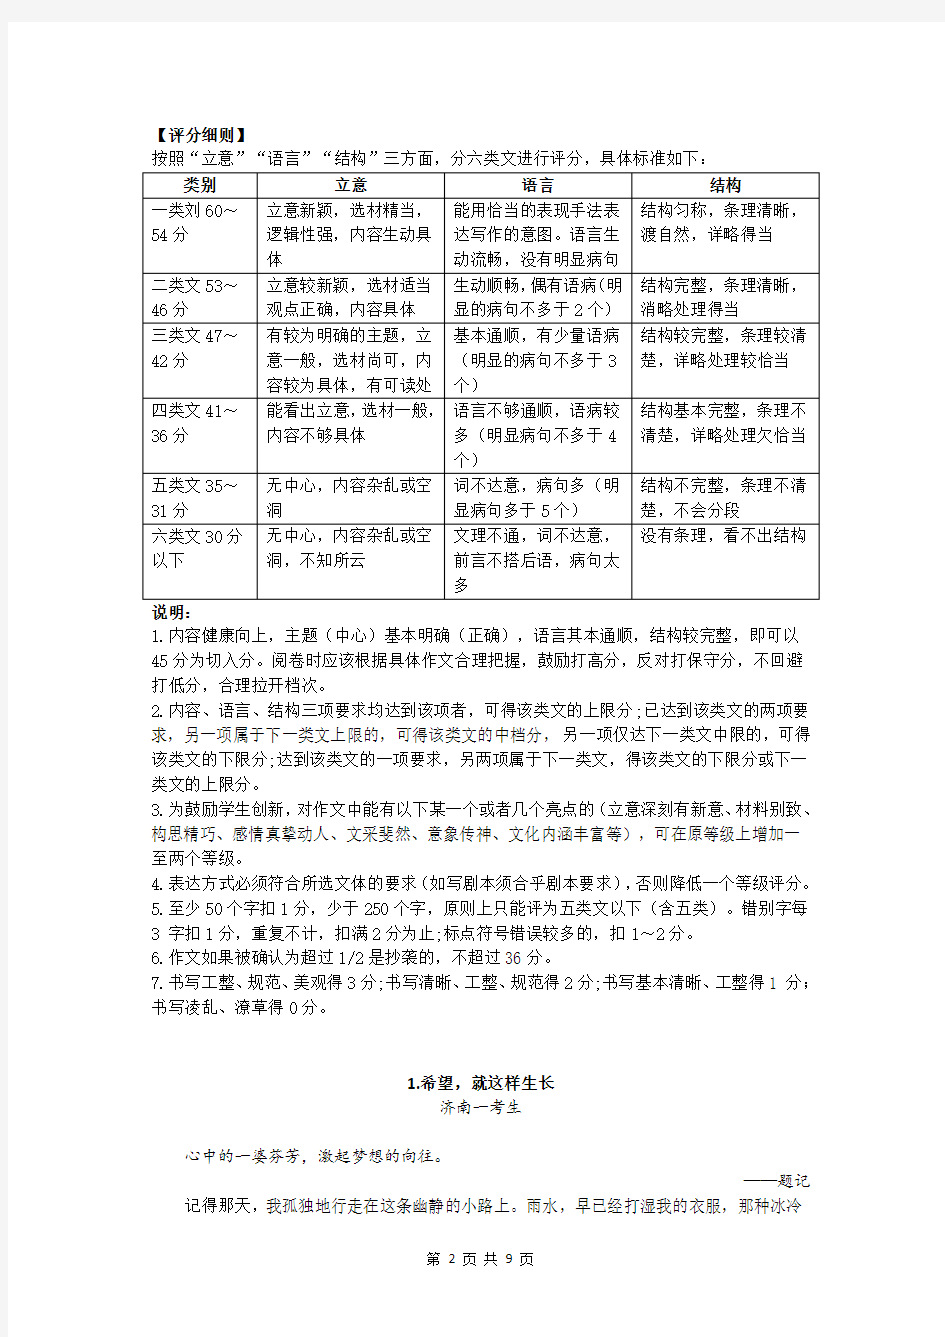 2020年济南市中考作文写作指导及满分作文评析(三)